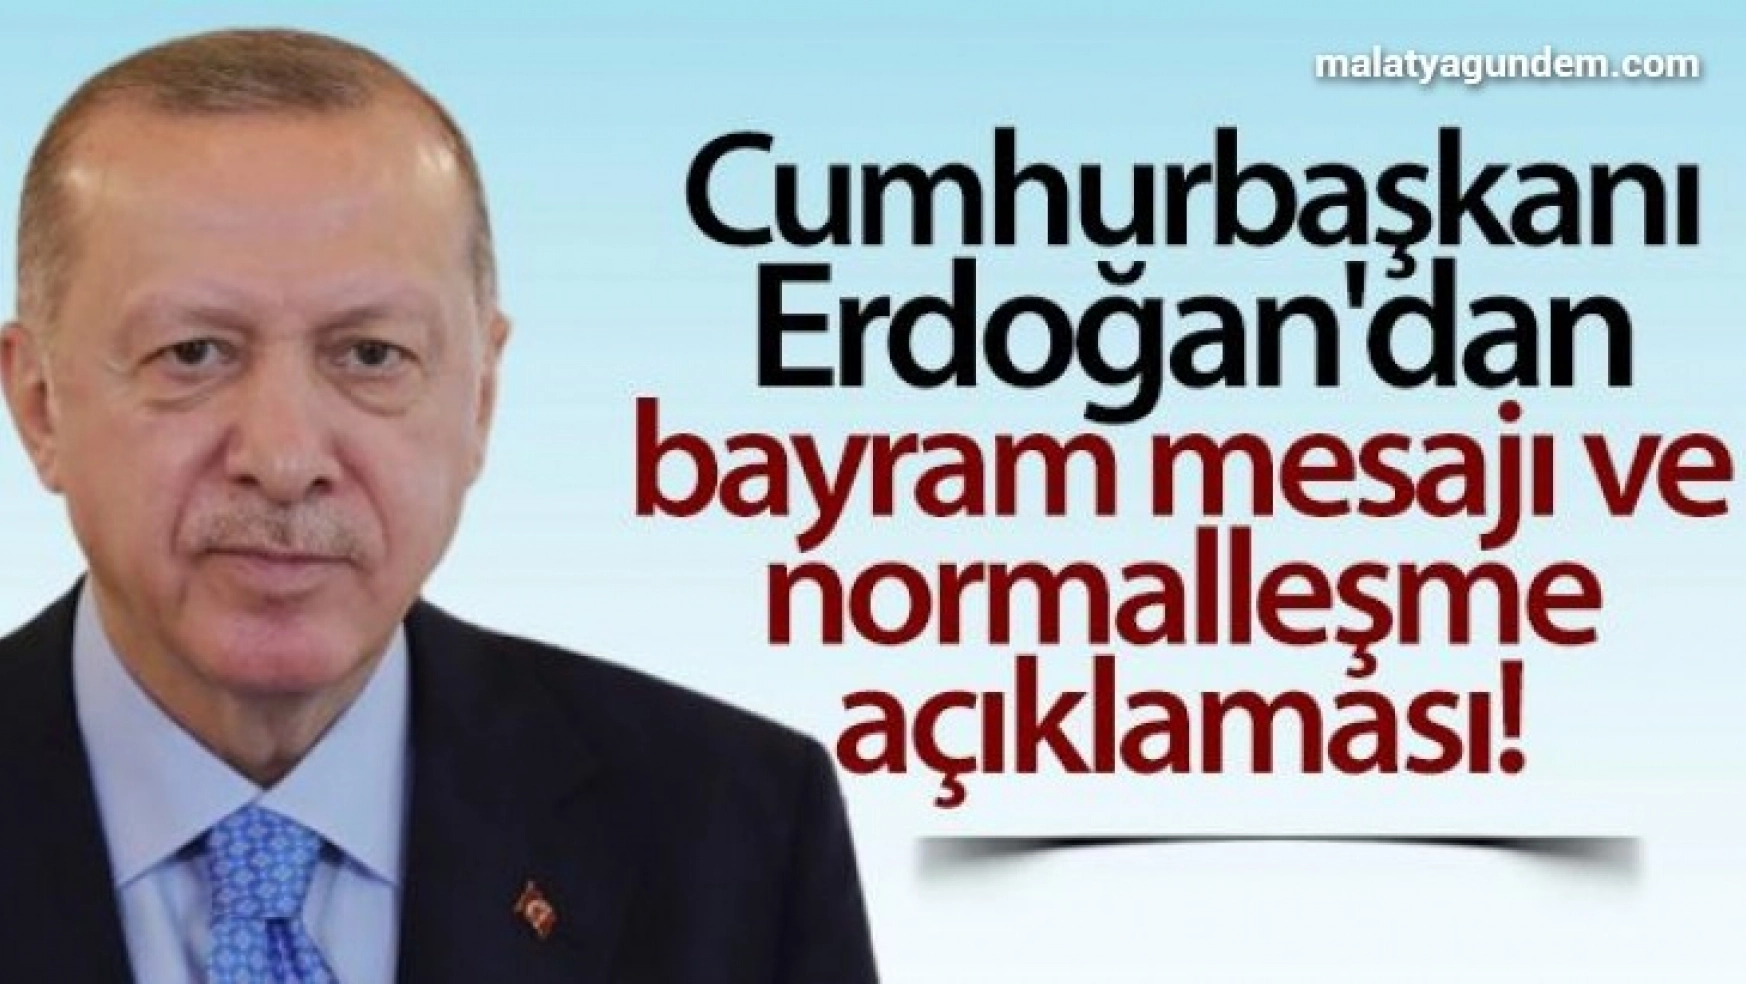 Cumhurbaşkanı Erdoğan'dan bayram mesajı ve normalleşme açıklaması!